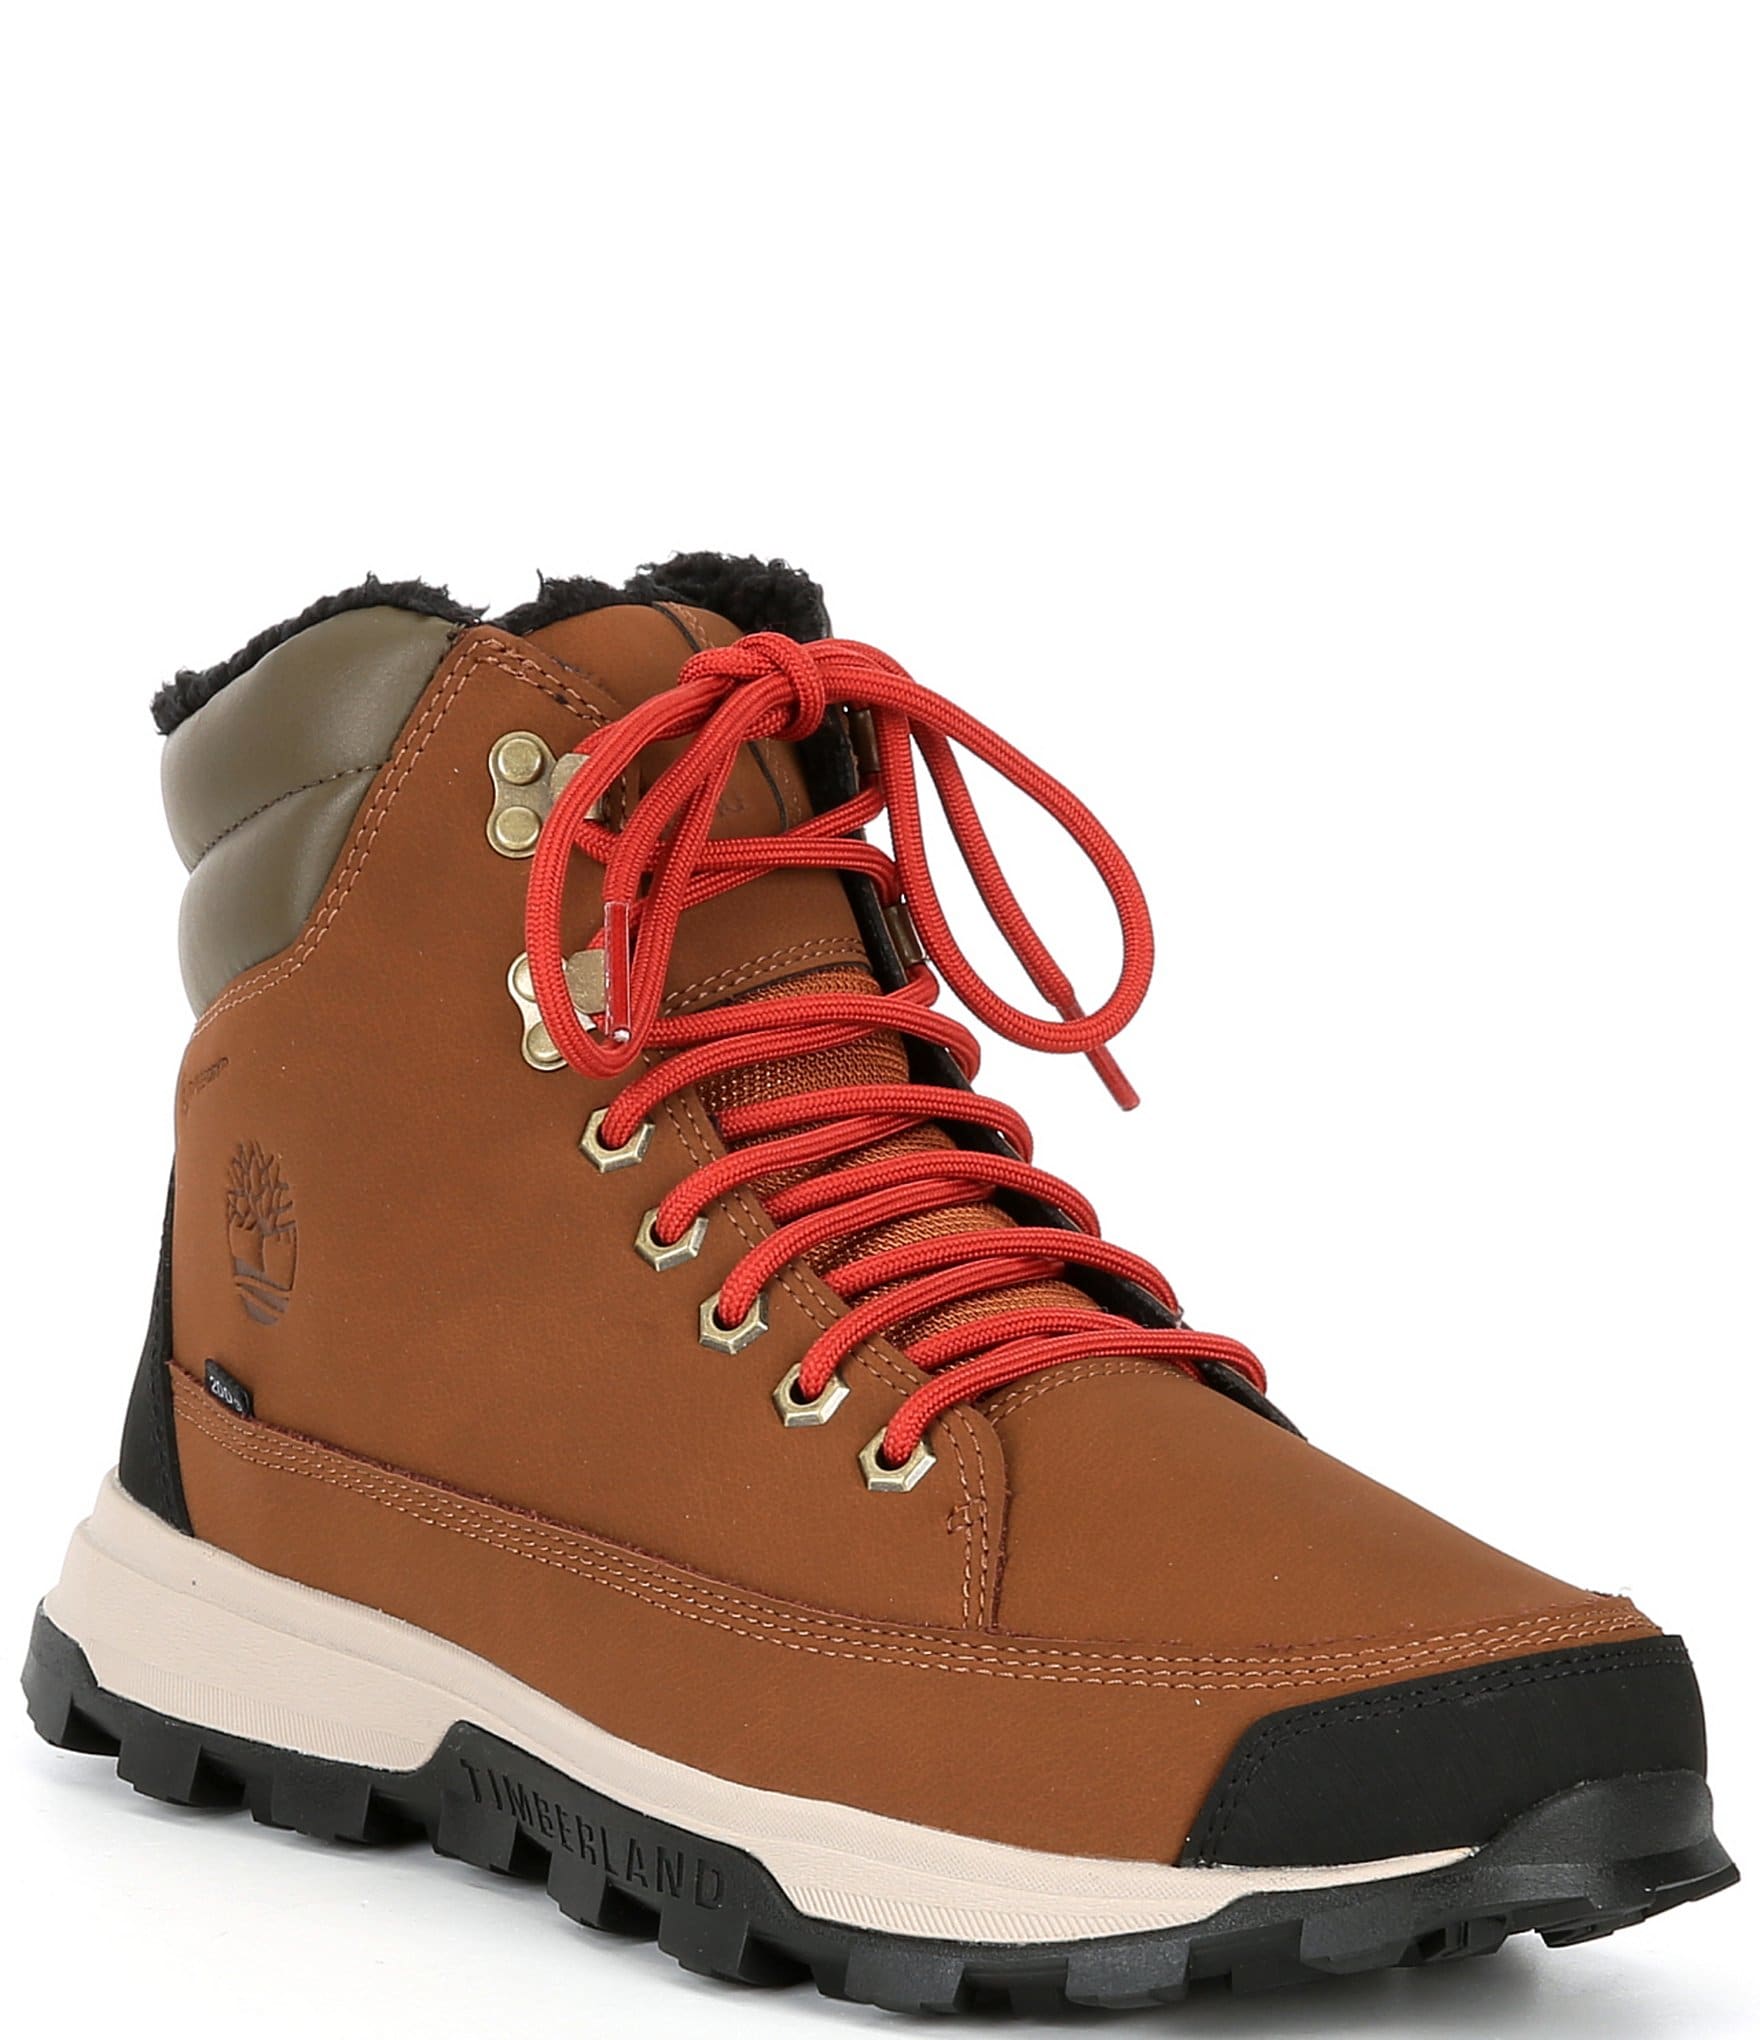 Timberland Men's Treeline Winter Weather Waterproof Insulated Boots ...